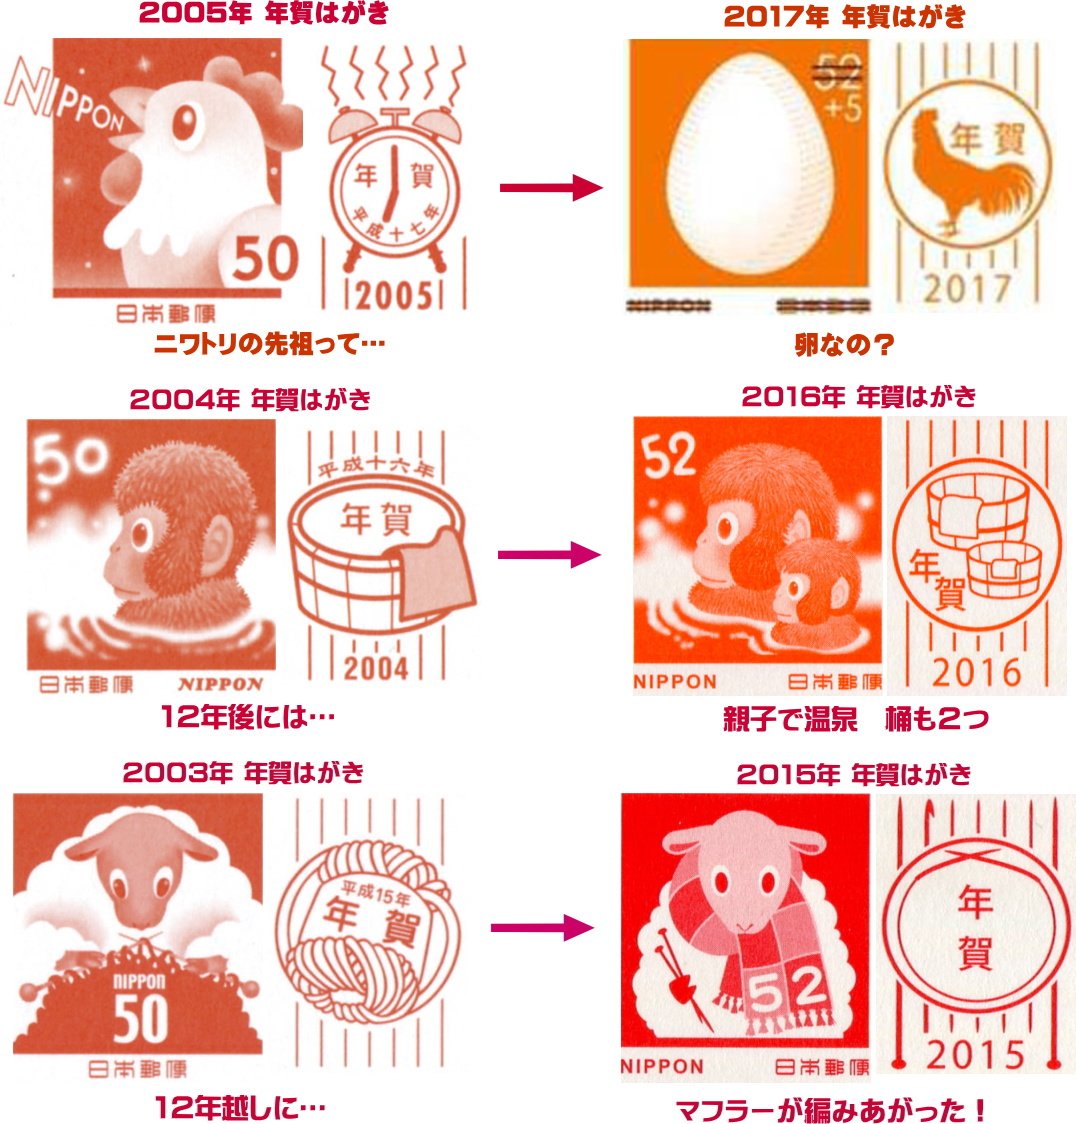 公益財団法人 日本郵趣協会 17年用年賀はがき 寄附金付 のデザインは おめでたい卵 で 卵の影はマイクロ文字で あけましておめでとうございます と書かれているので ルーペで見てください 通信面には 卵の黄身をヒヨコに見立てて明るいタッチで